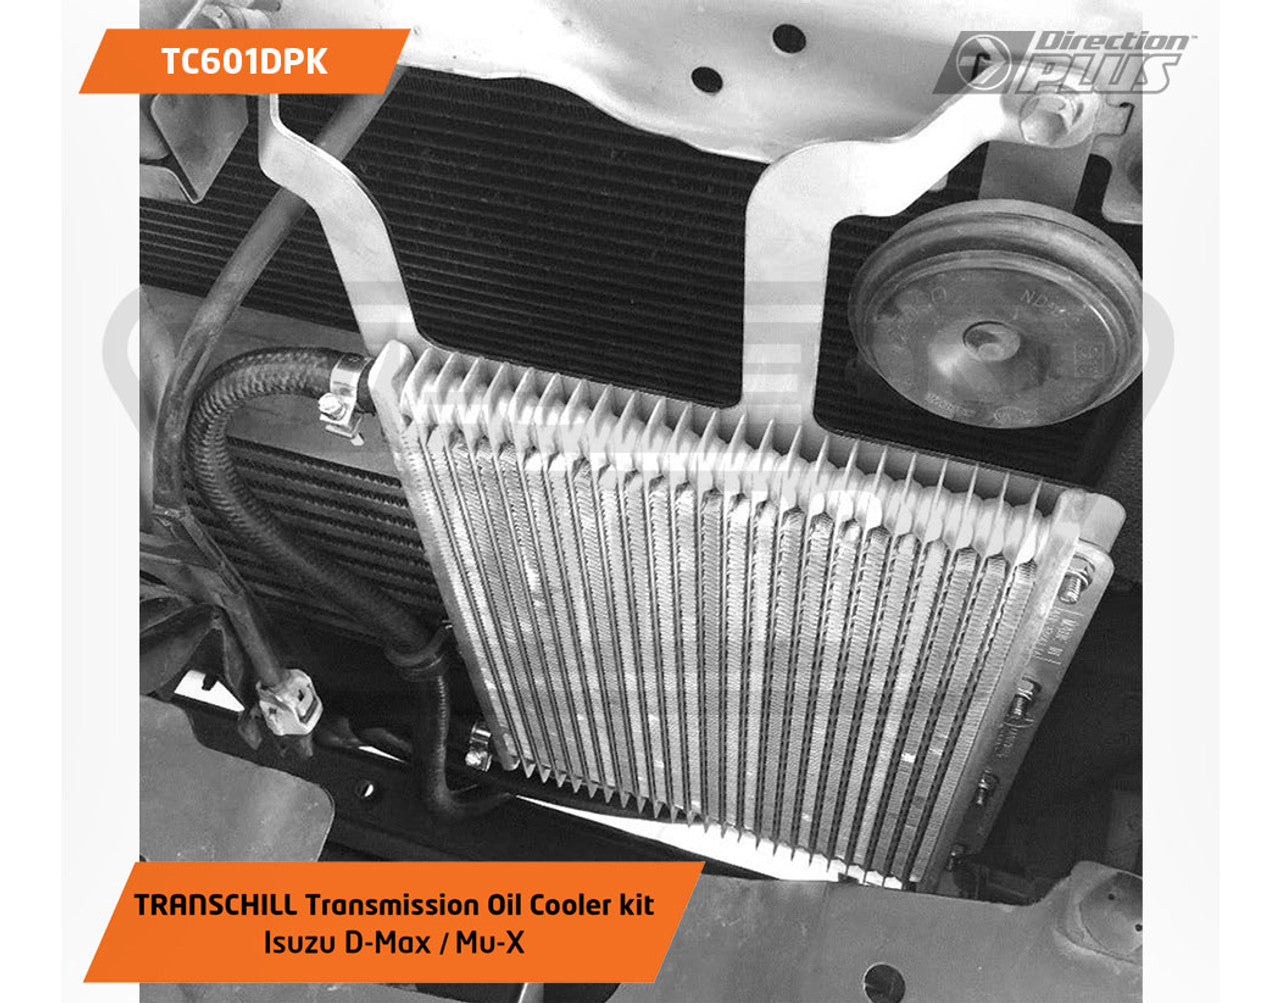 TC601DPK Transmission Cooler Kit for Isuzu D-Max 2012-19 MU-X 2013-17 4JJ1TC/TCX TransChill